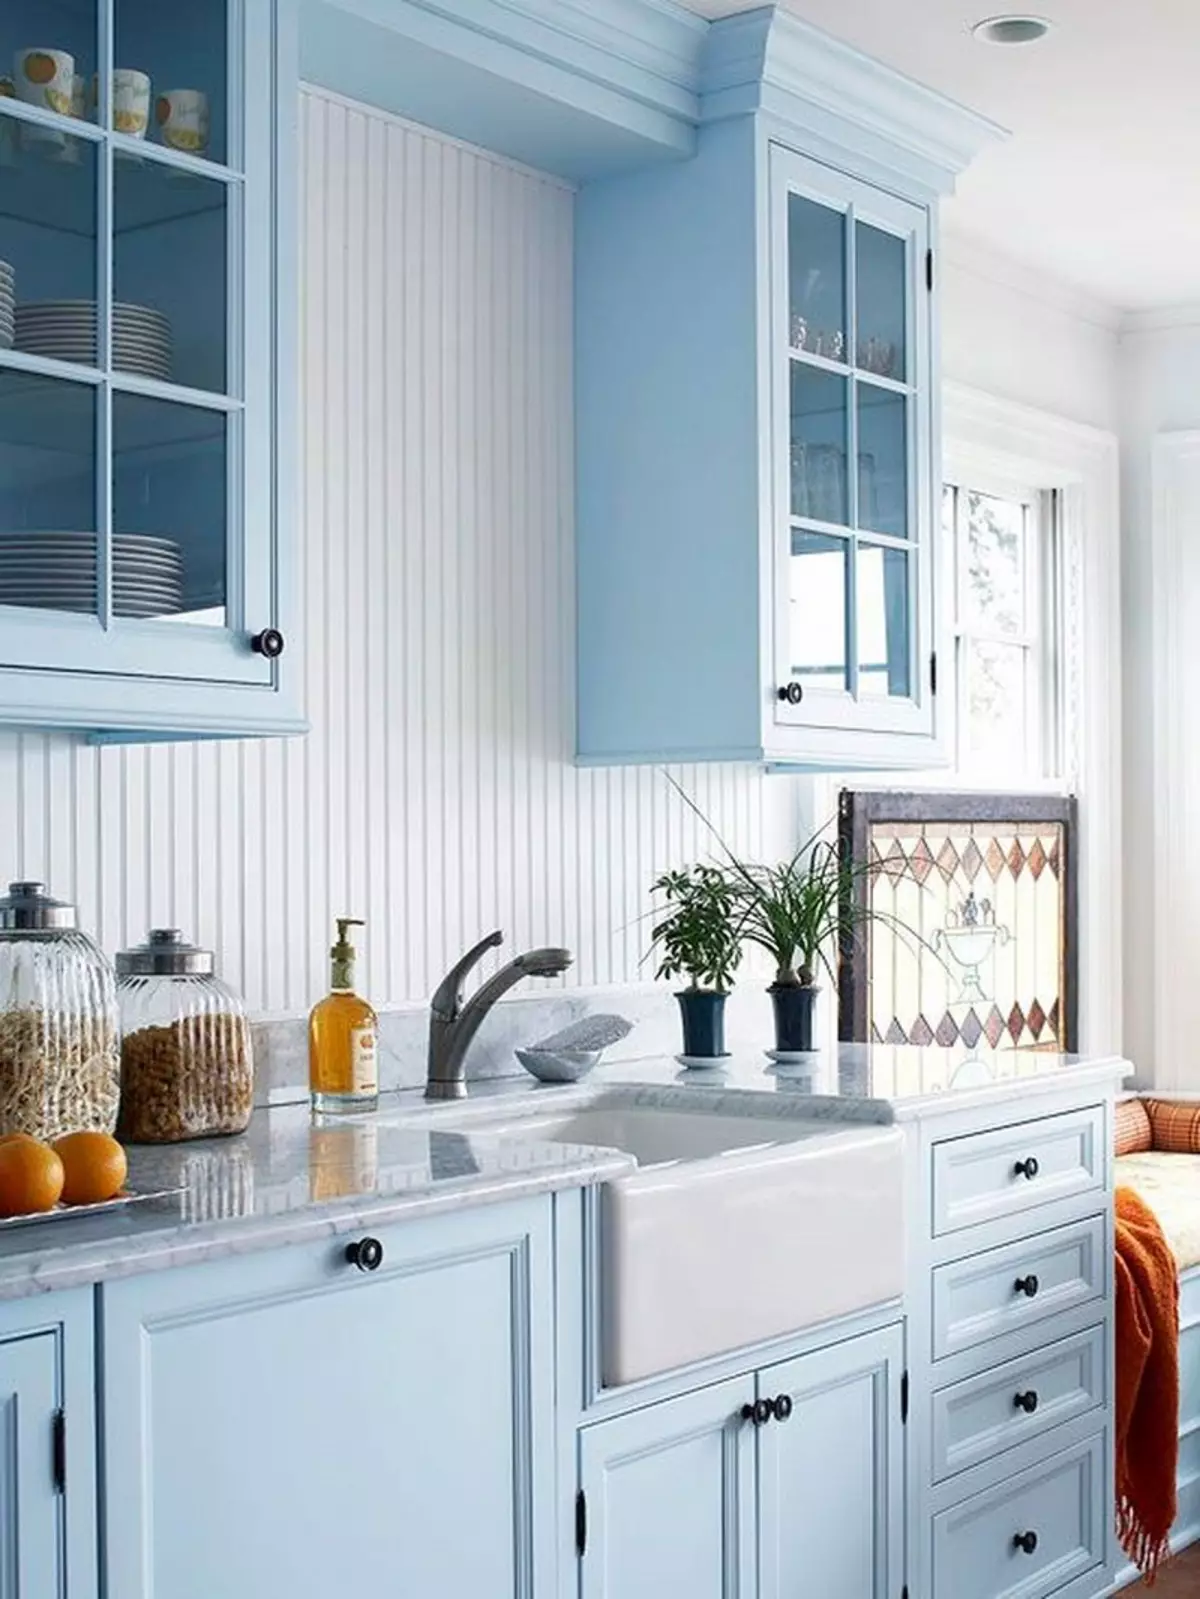 藍廚房（82張照片）：在藍色廚房套裝內部合併哪種顏色？淺藍色和深藍色色調的廚房設計 9555_8